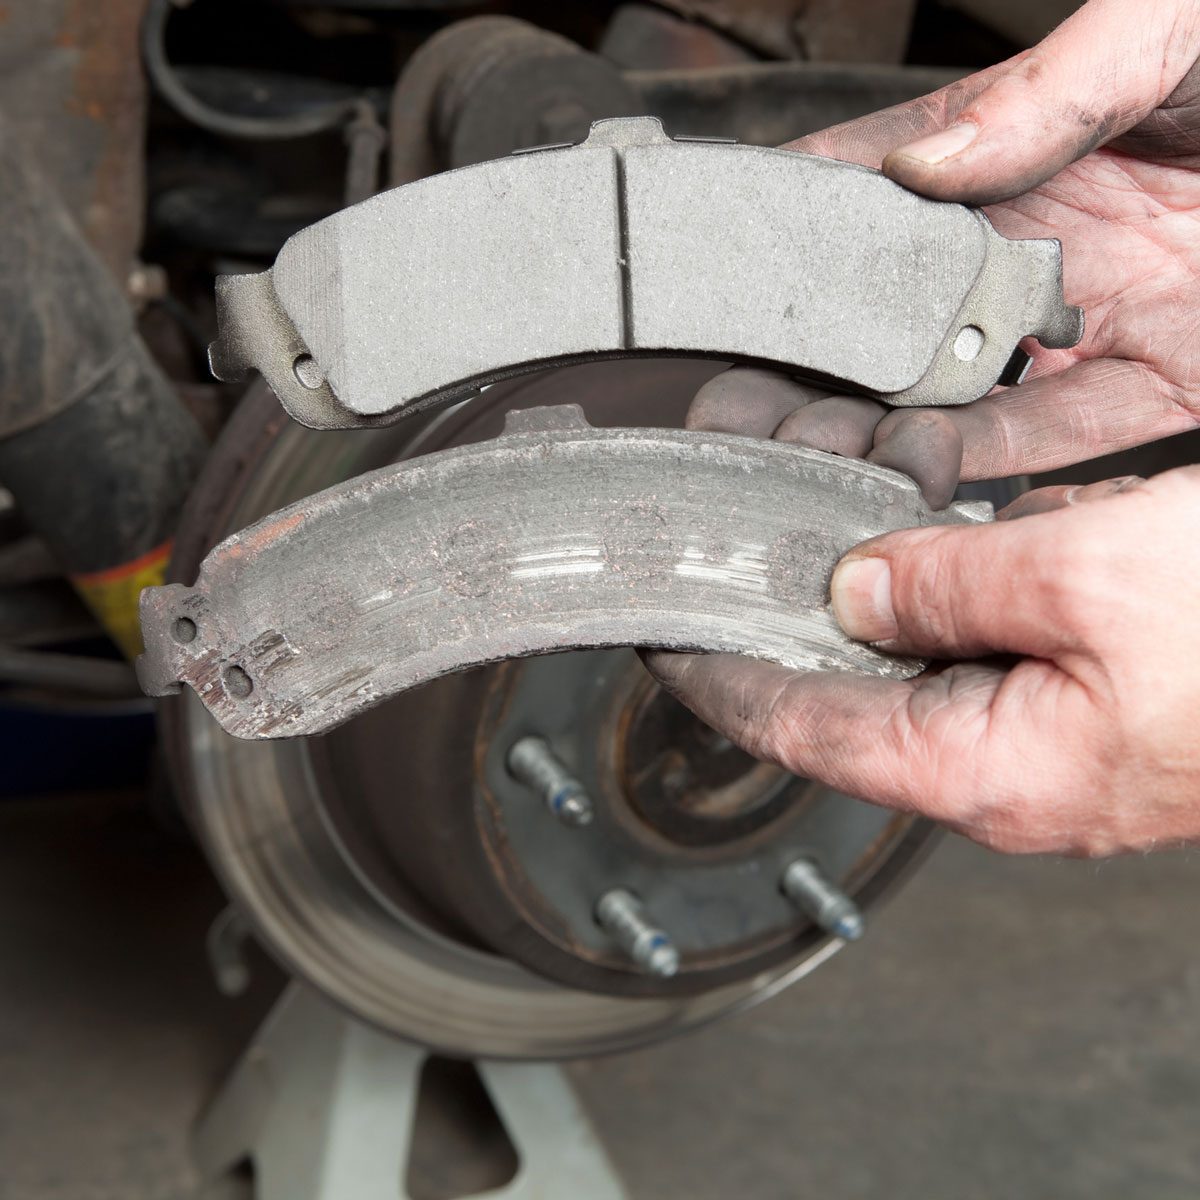 Safety First When It Concerns Auto Brake Repair